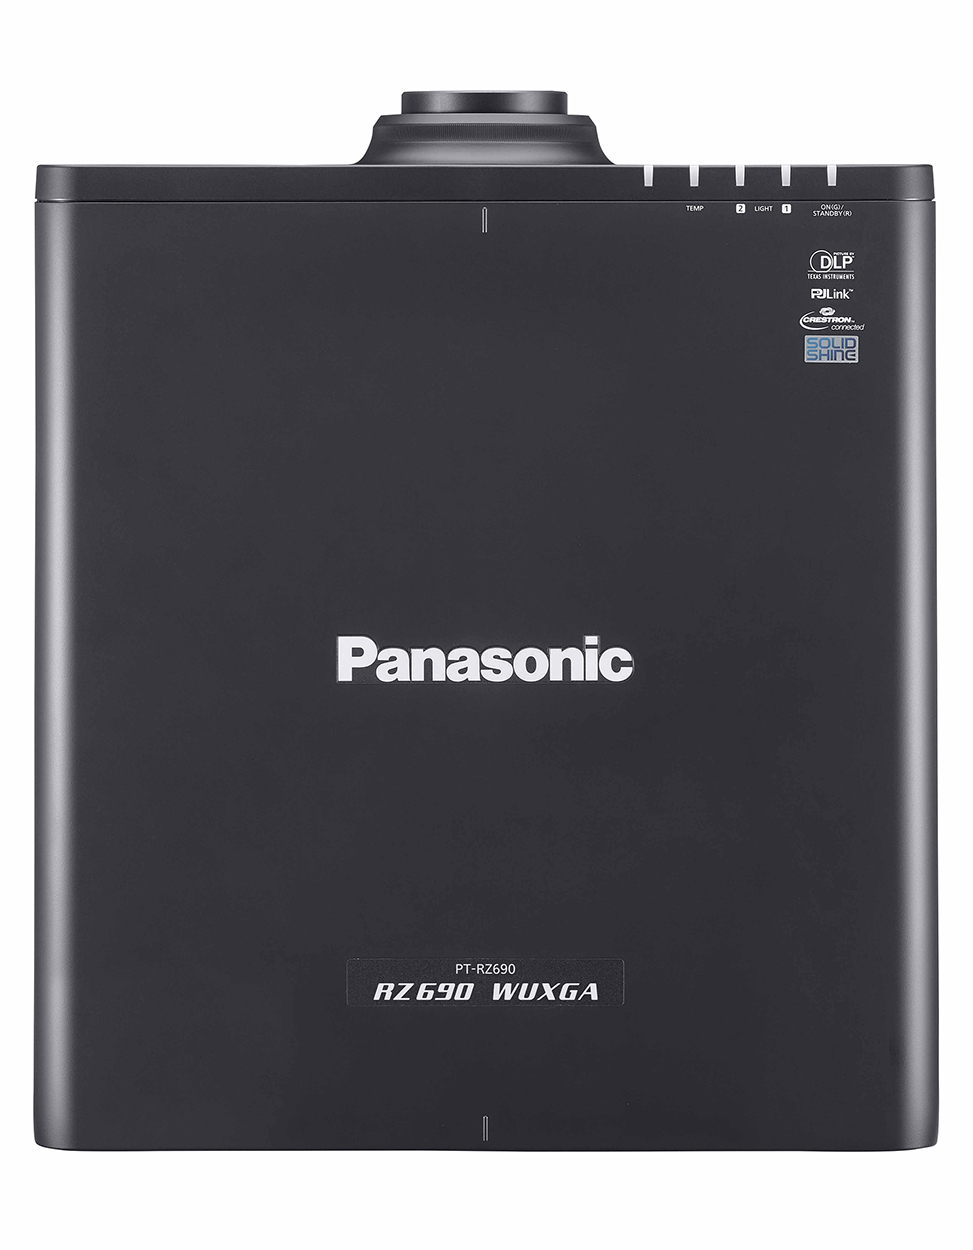 Panasonic PT-RZ690